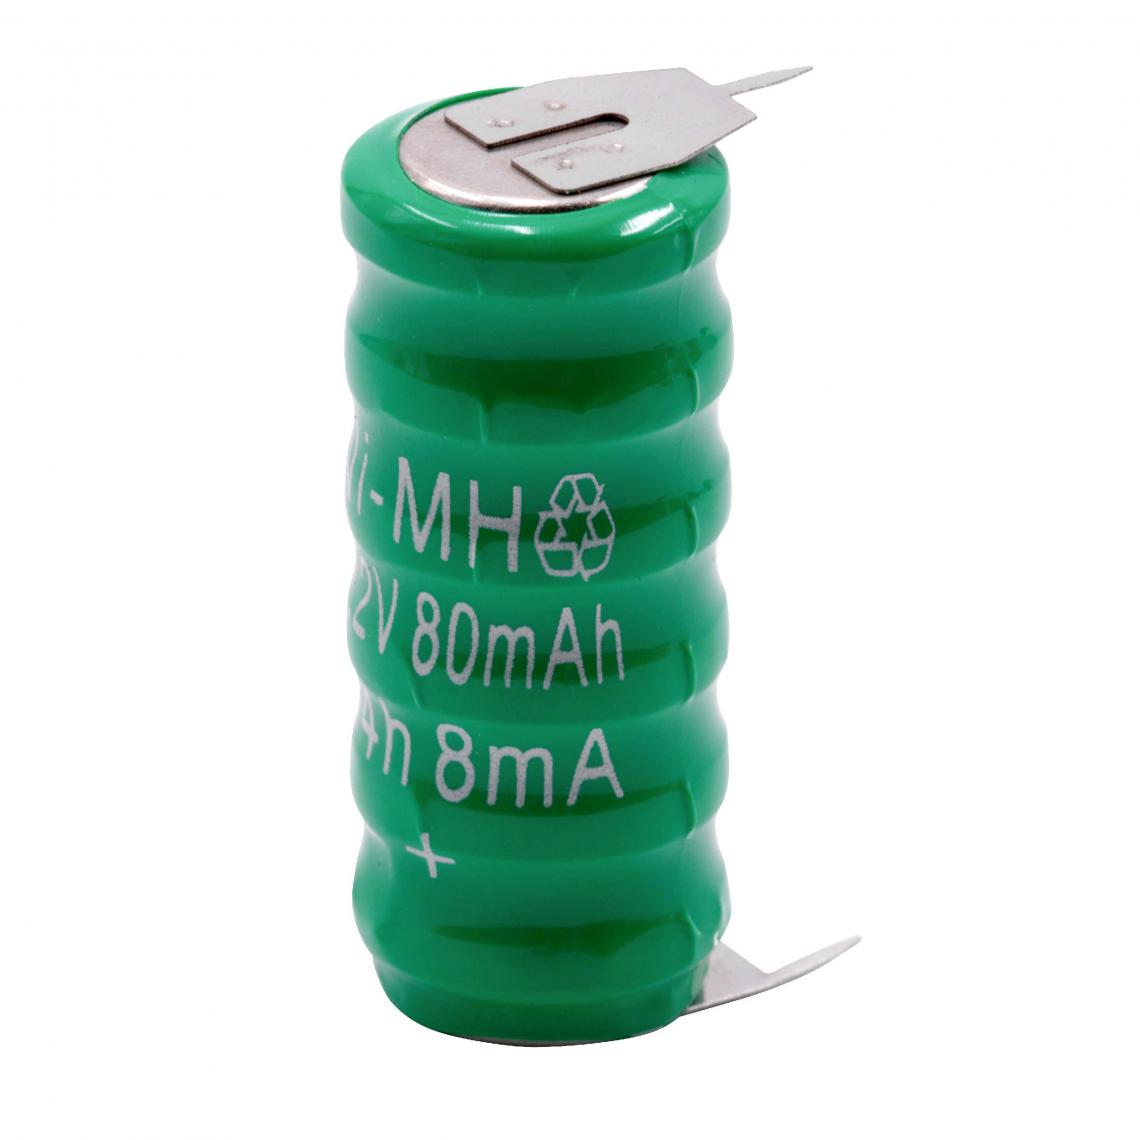 Vhbw - vhbw NiMH pile bouton de remplacement (6x cellule) 3 épingles type V80H 80mAh 7.2V convient pour les batteries de modélisme etc. - Autre appareil de mesure